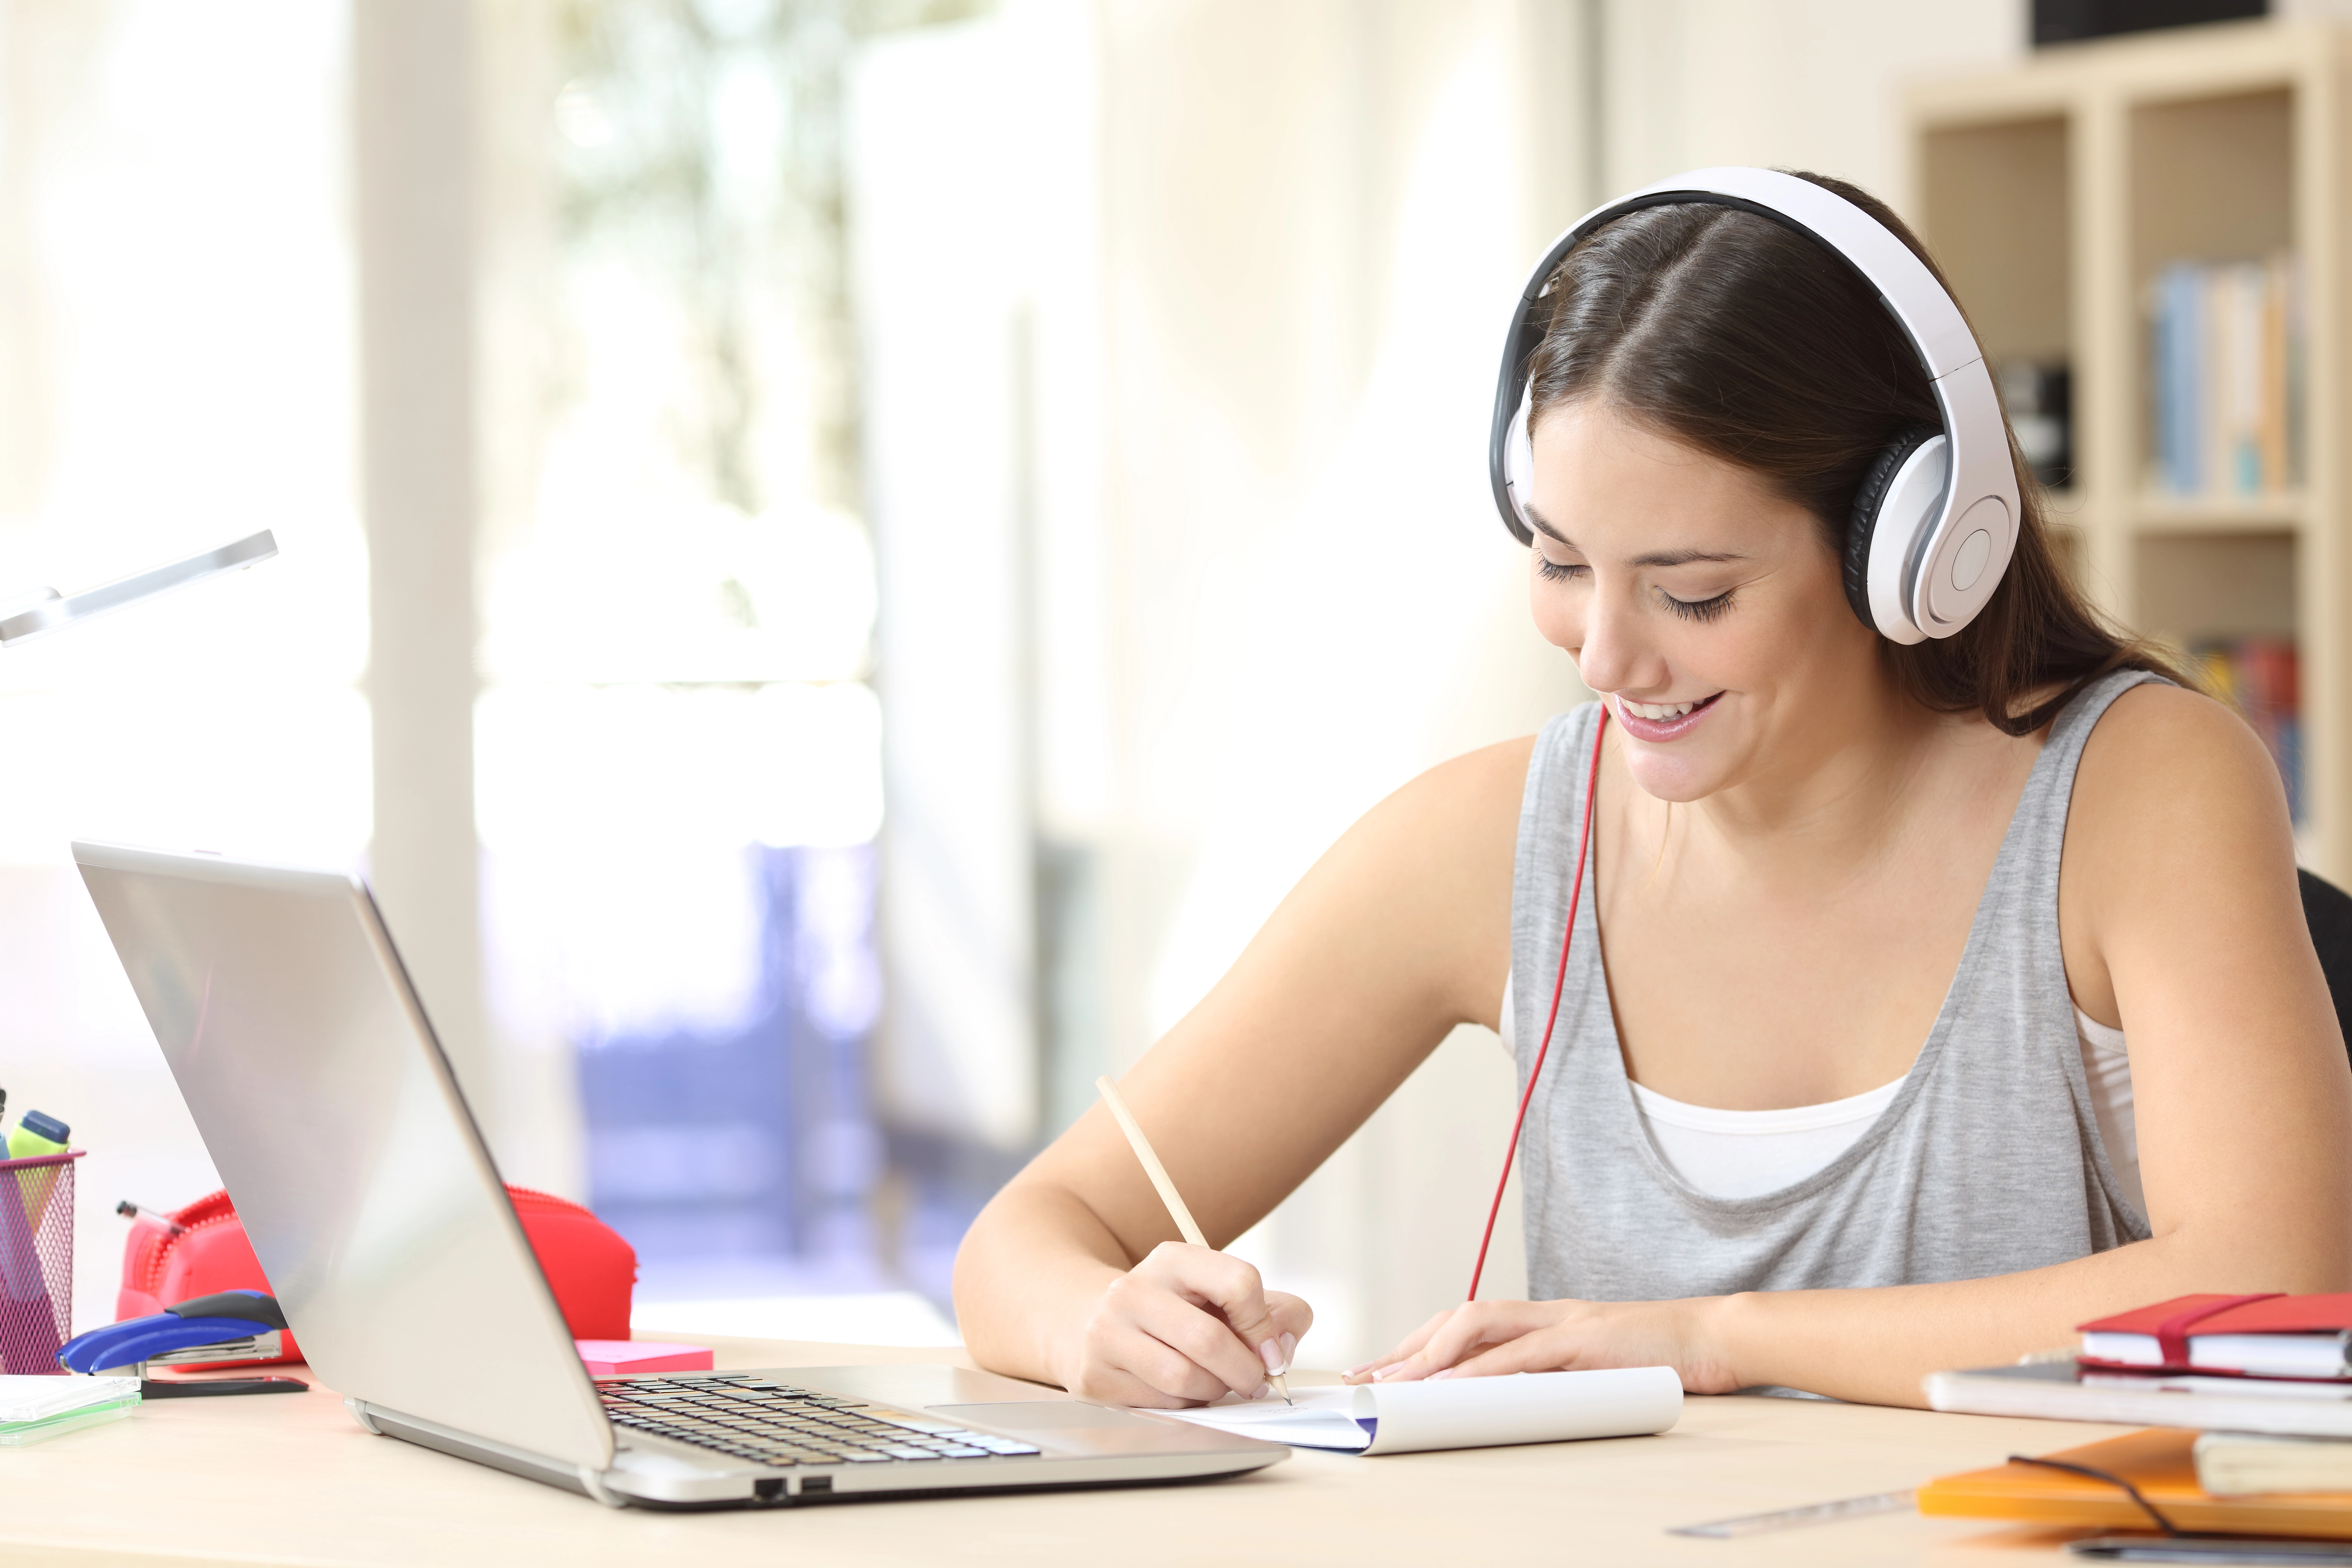 laptop study headphones